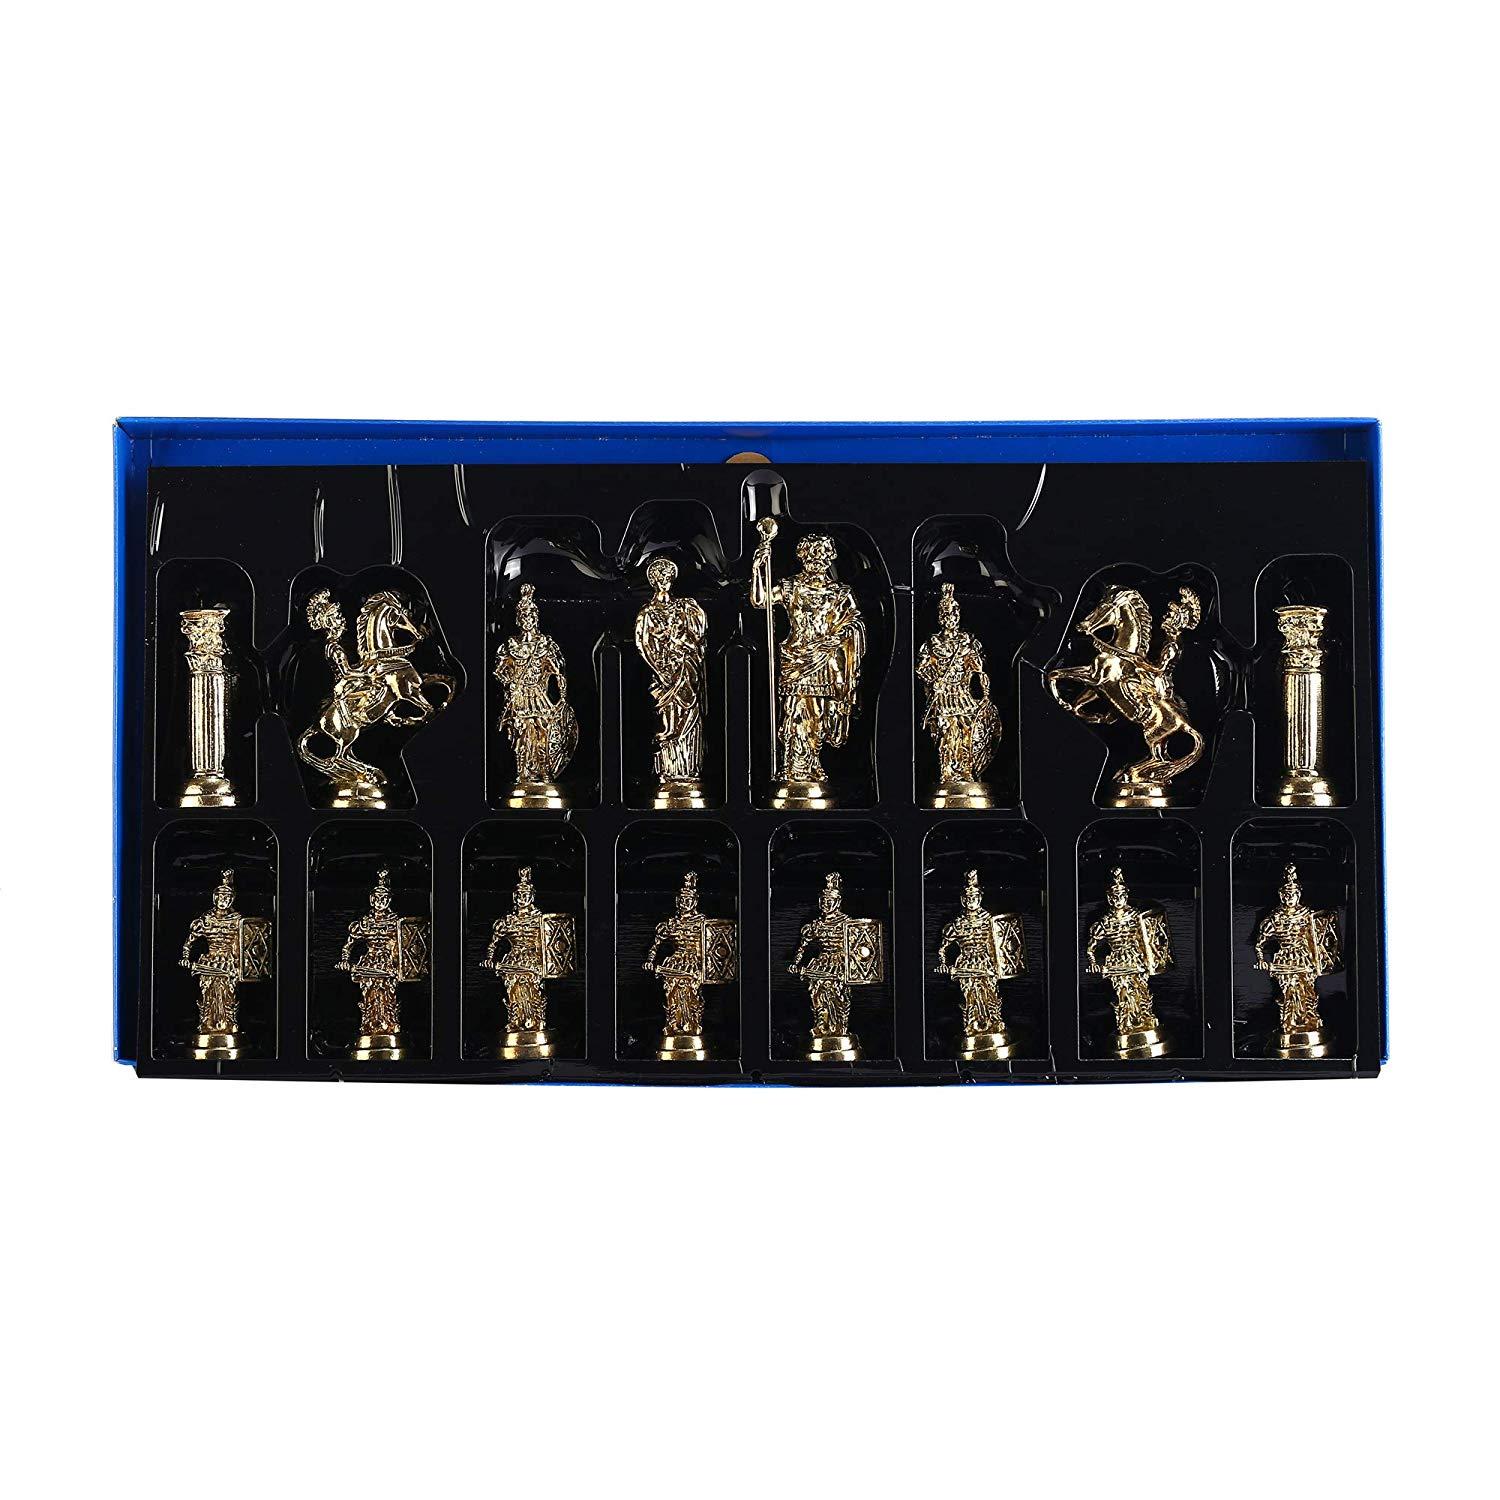 Изображение товара: Набор шахматных фигурок в римском стиле, набор шахматных фигурок ручной работы, деревянная шахматная доска из натурального массива с оригинальной жемчужиной, около 10 см